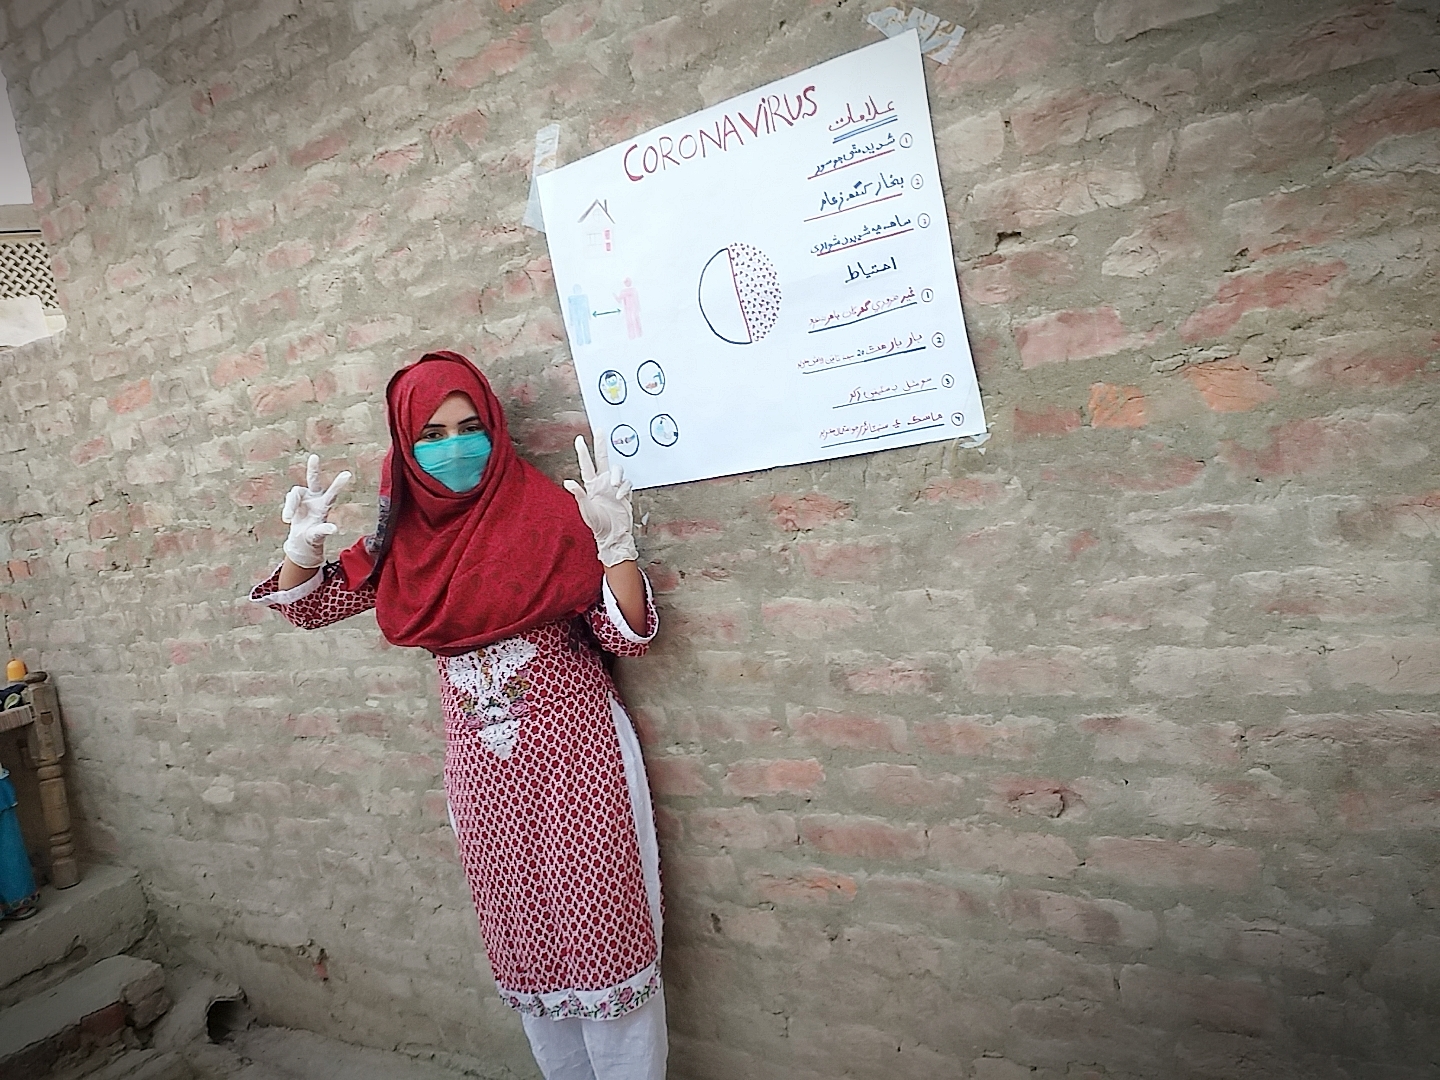 Salma in Pakistan geeft corona voorlichting